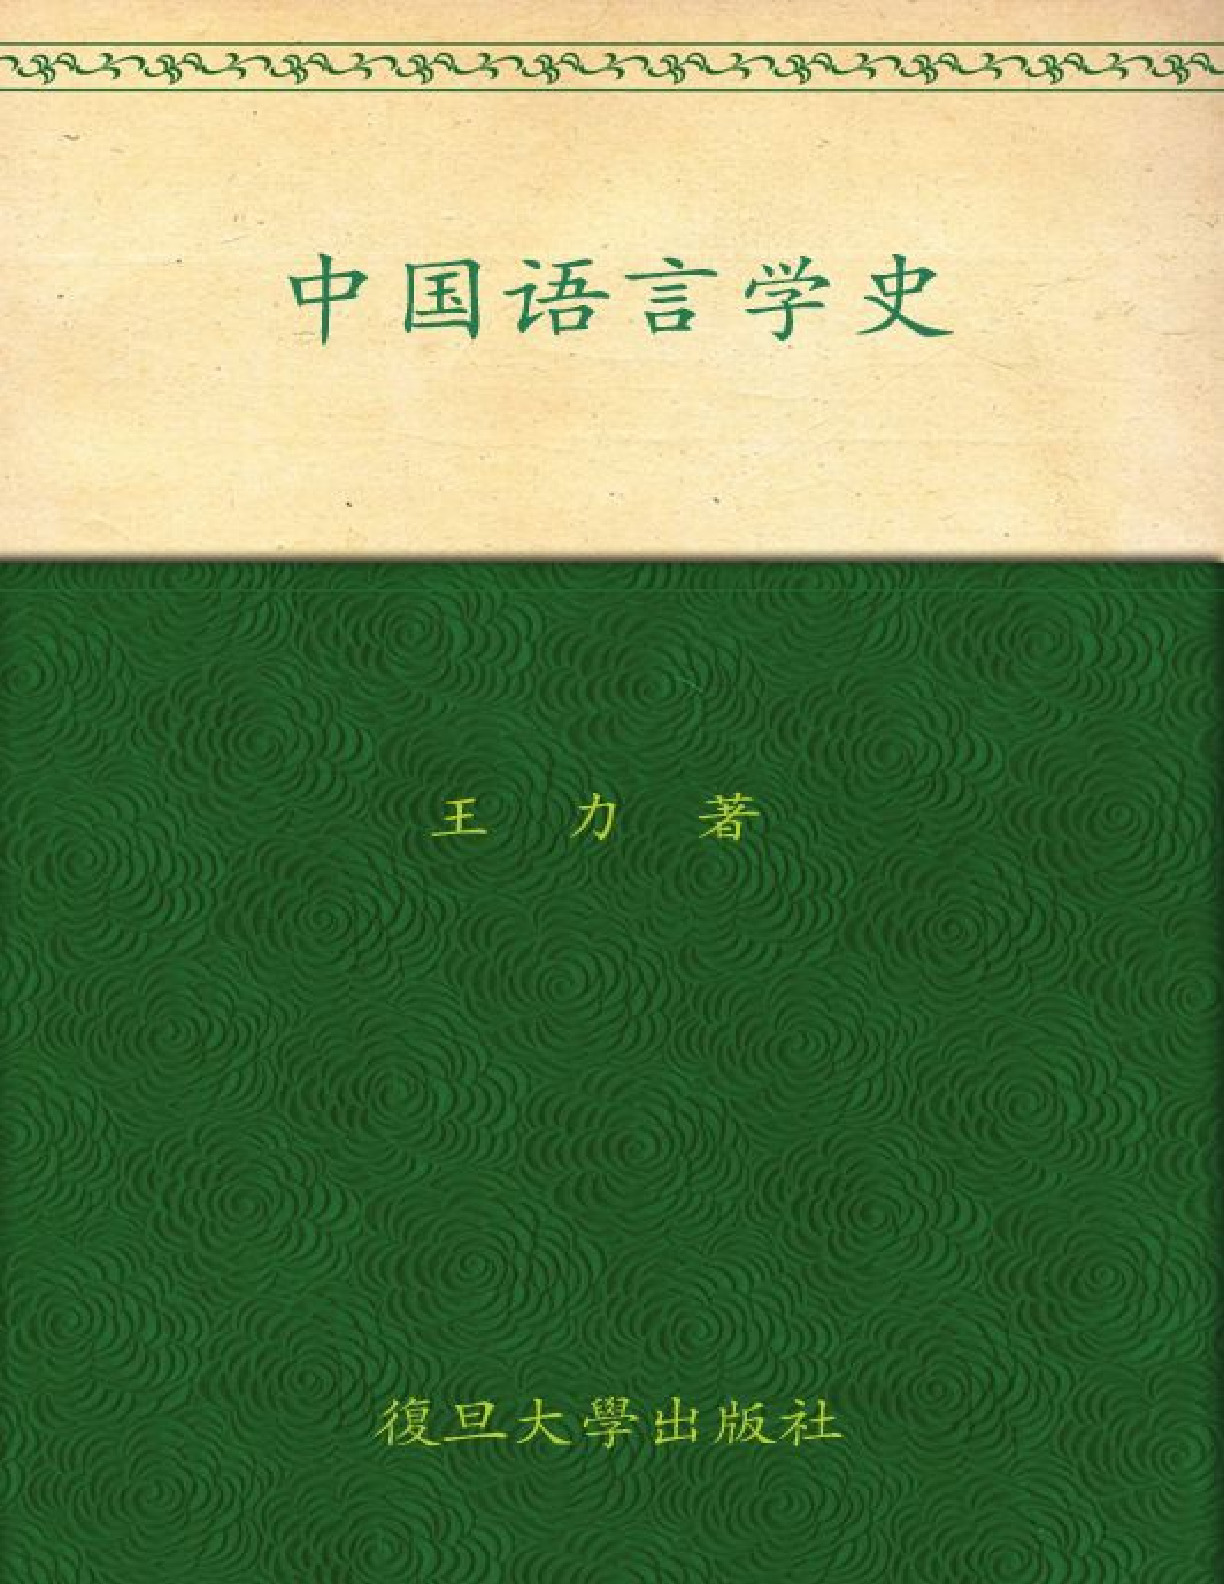 中国语言学史 – 王力